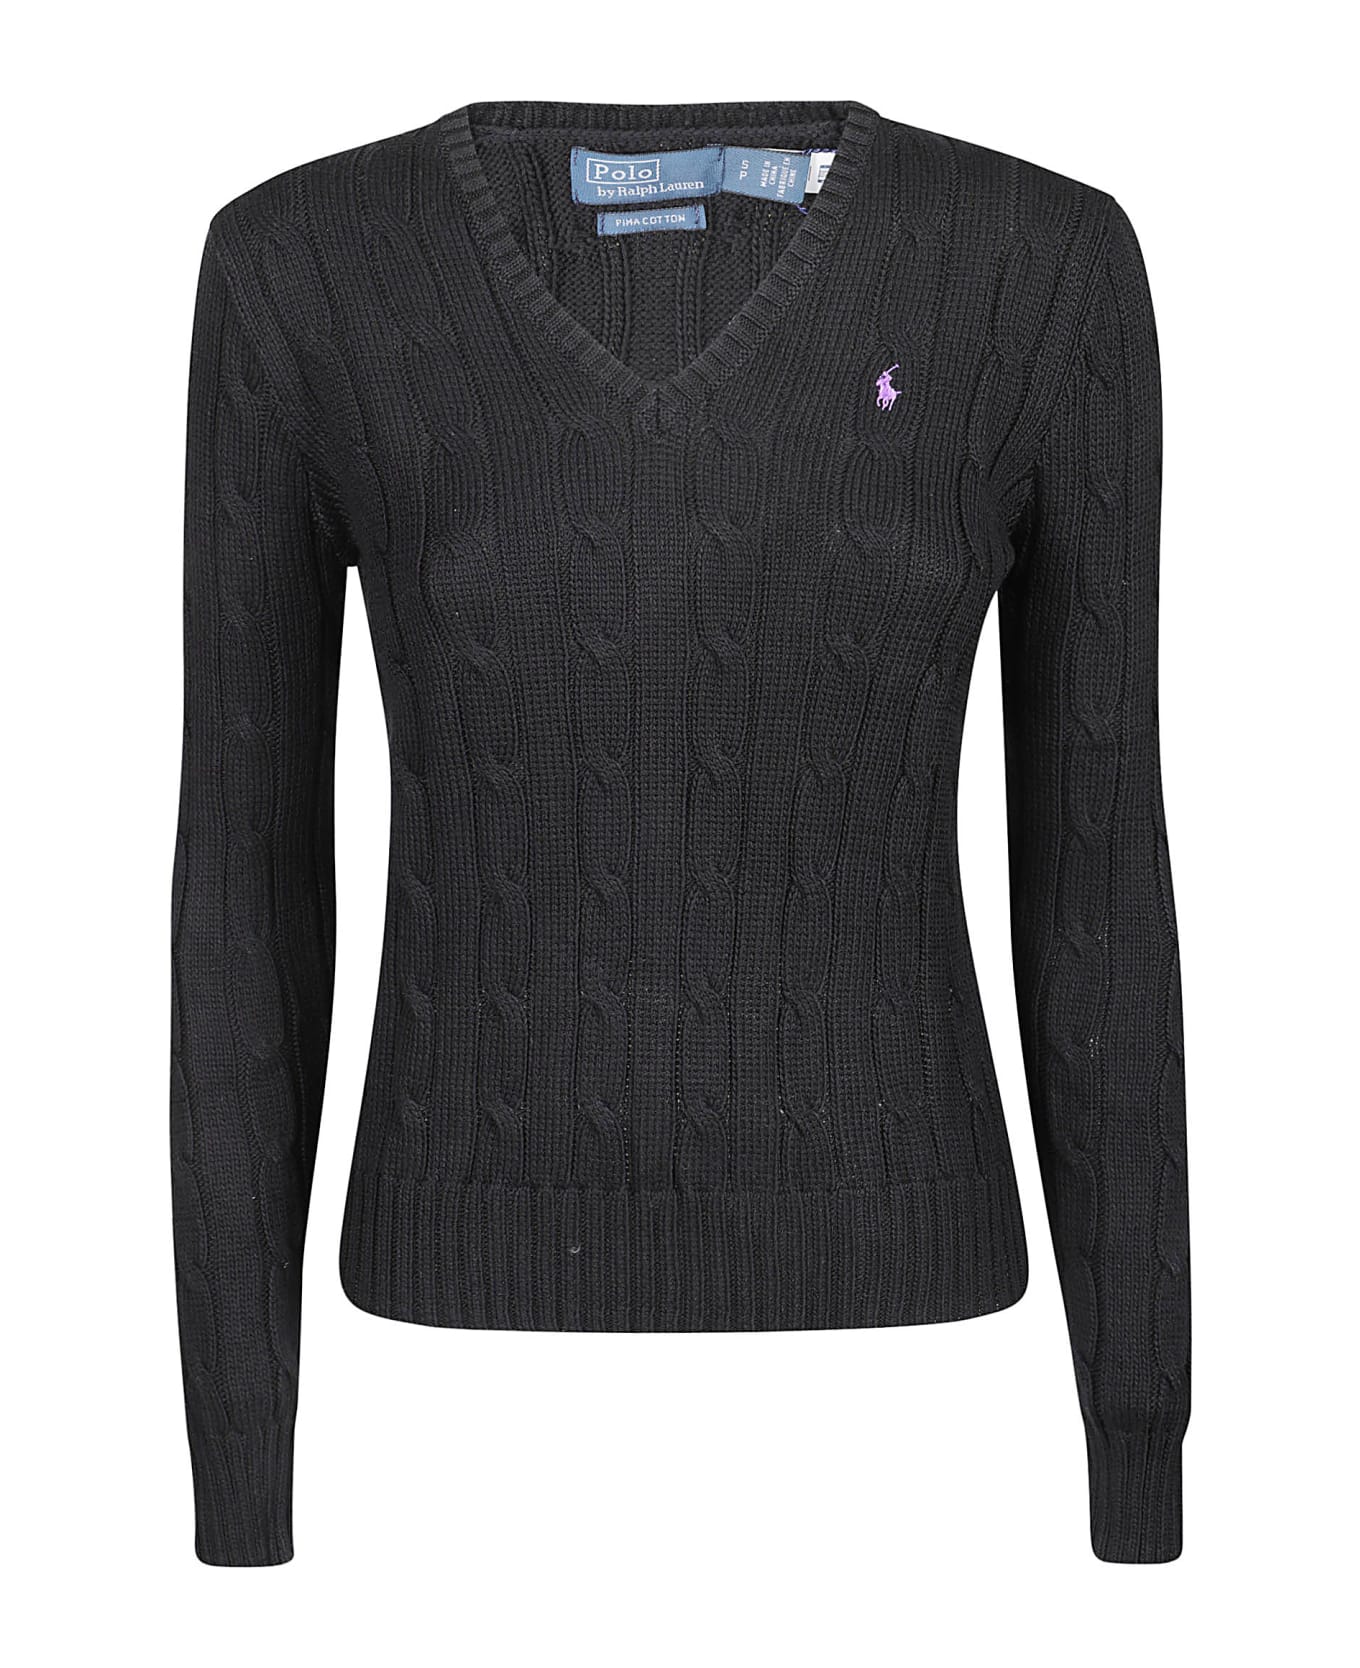 Polo Ralph Lauren Kimberly Sweater - Black ニットウェア